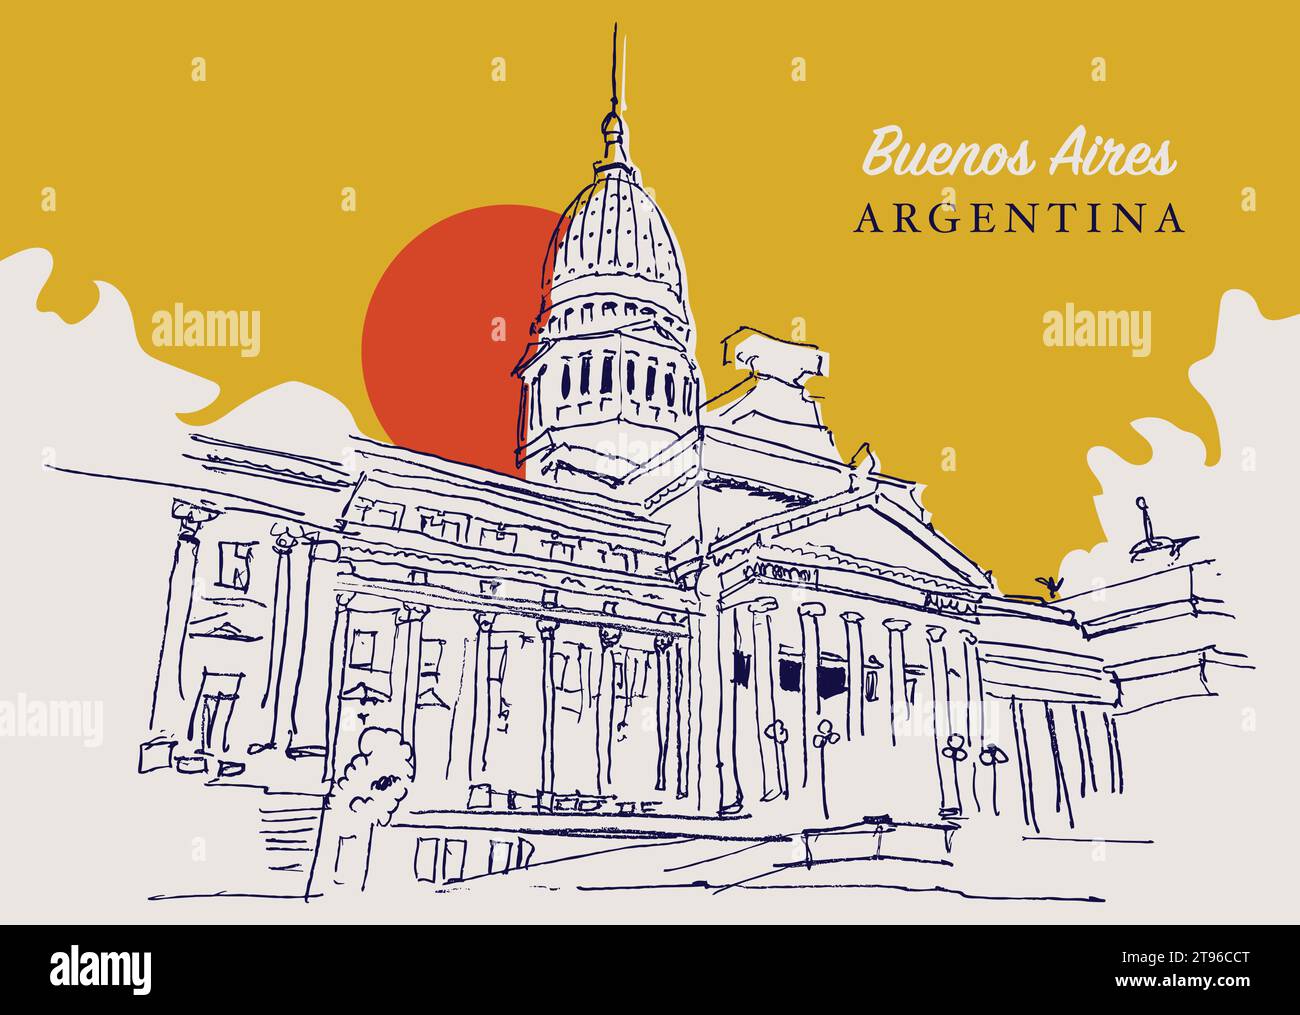 Disegno vettoriale disegnato a mano della camera dei rappresentanti dell'Argentina a Buenos Aires. Illustrazione Vettoriale